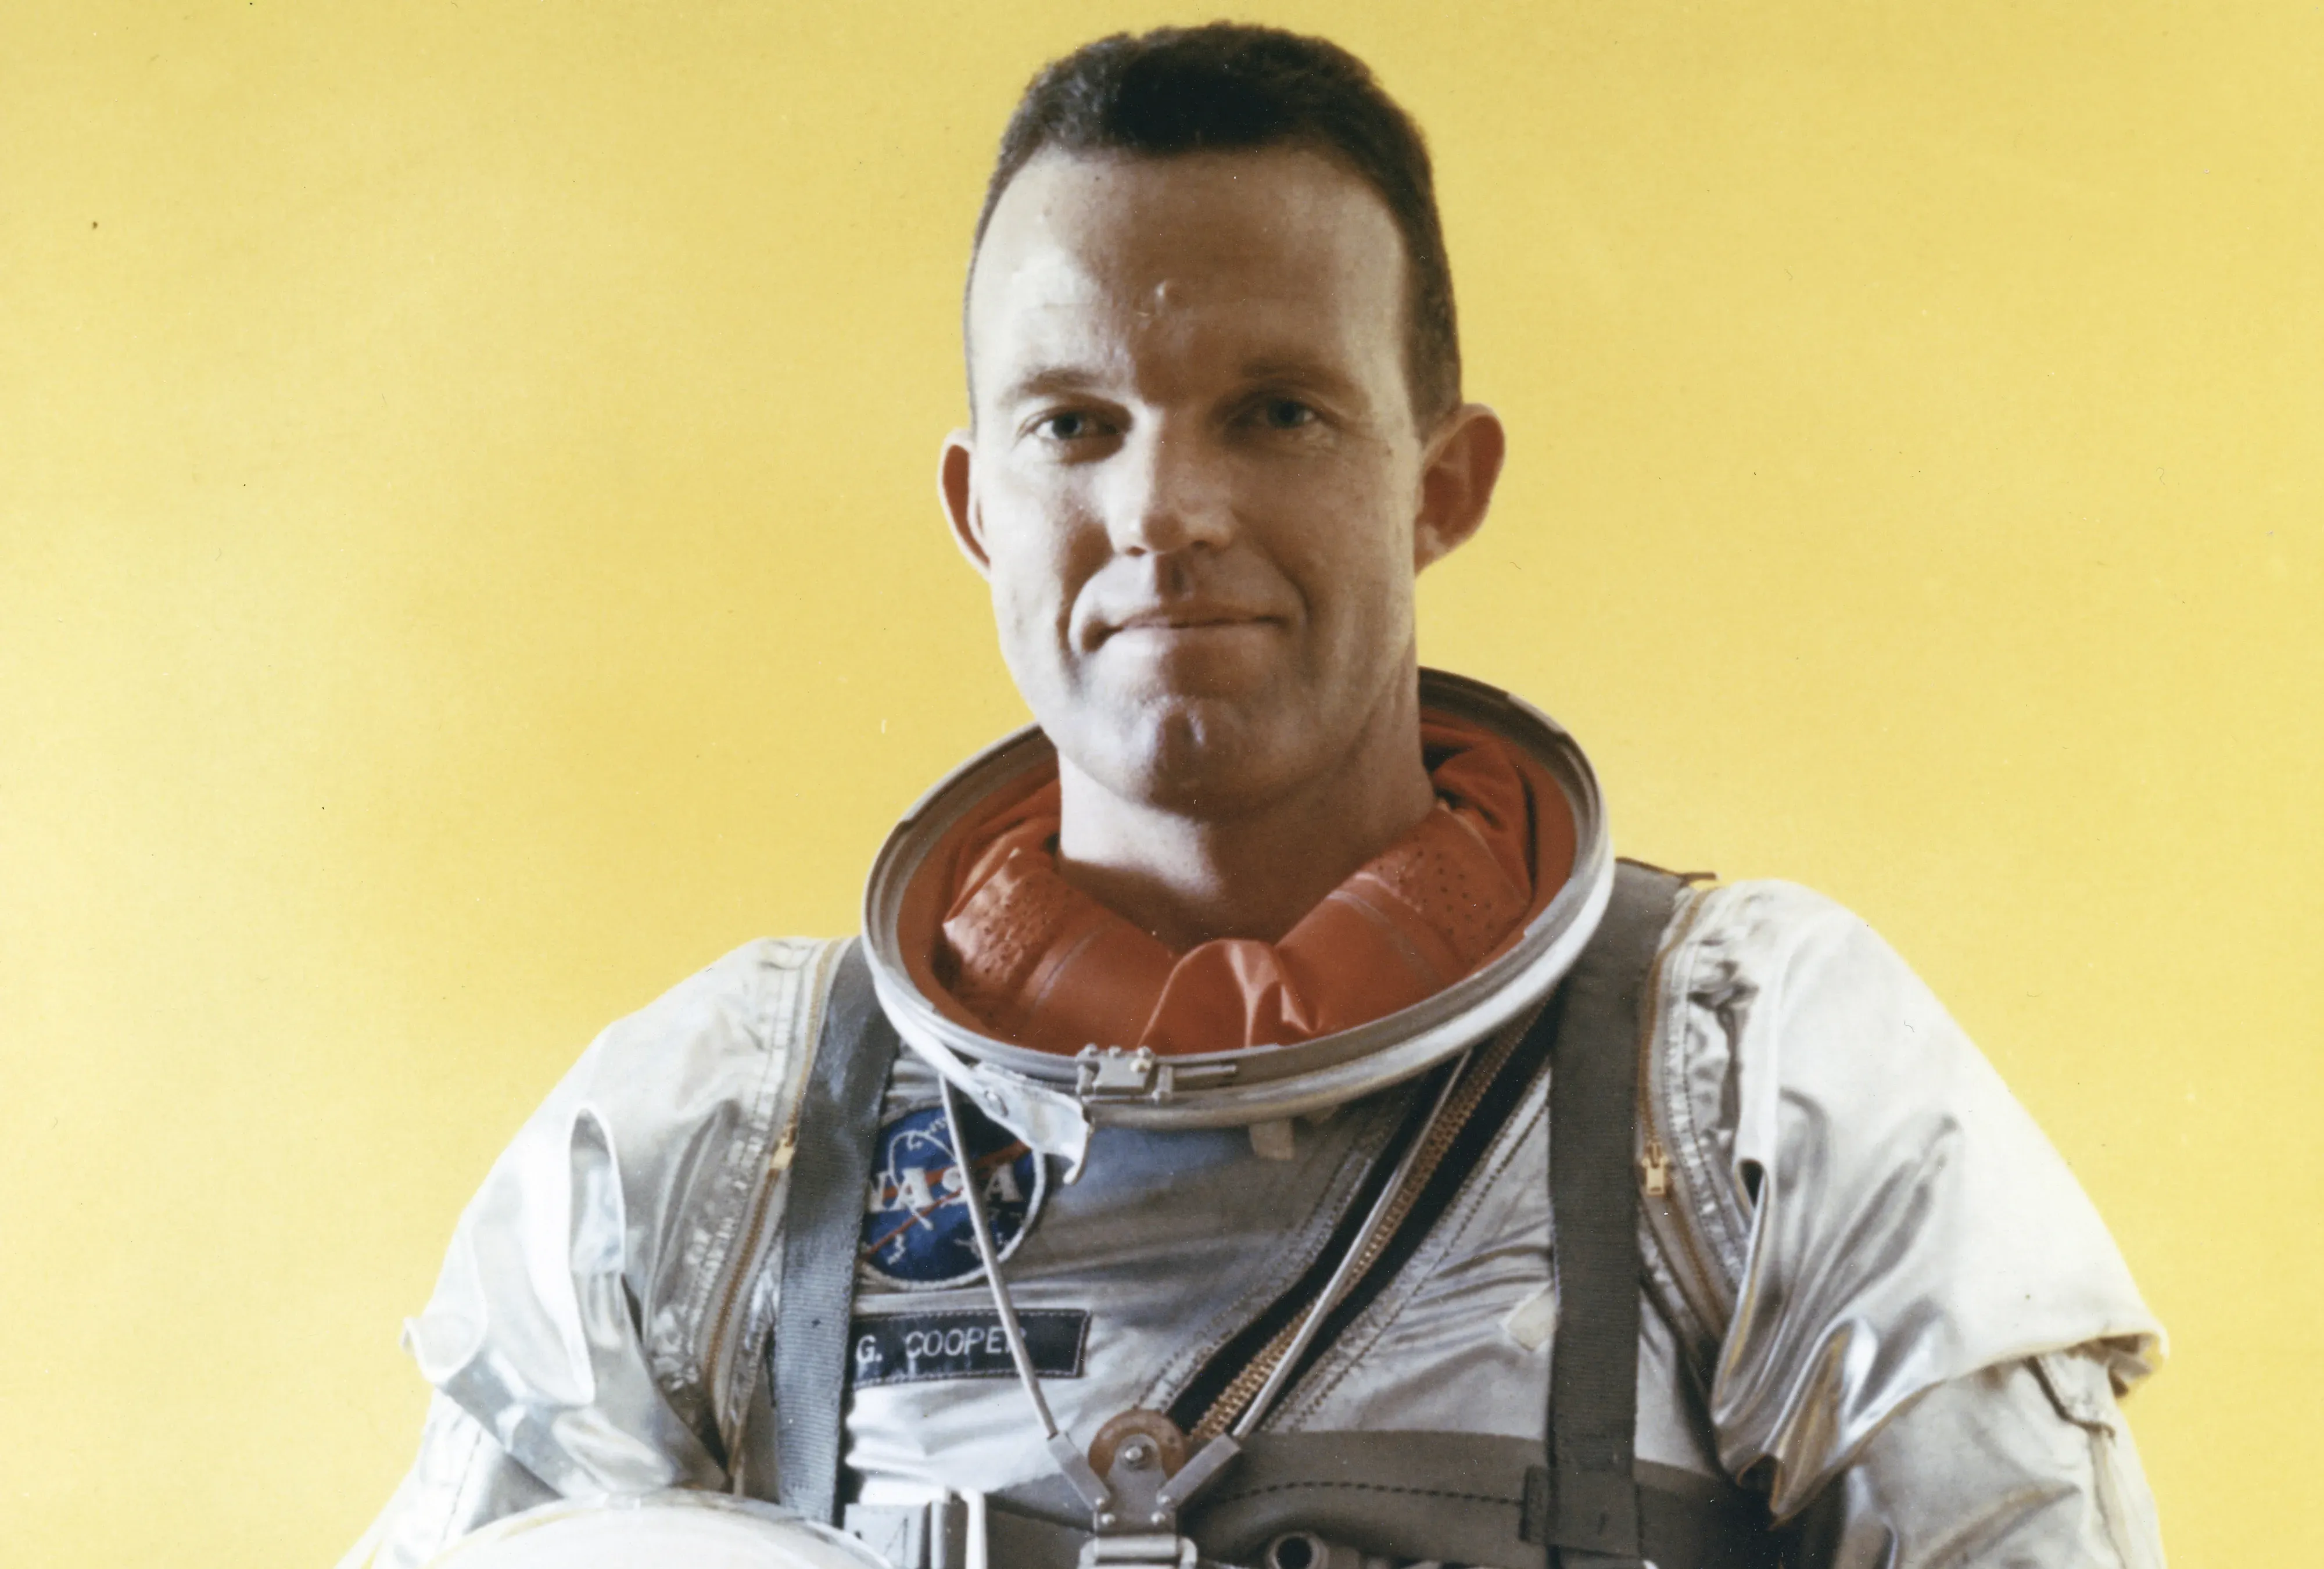 Durante su recorrido en la nave espacial Mercury el comandante Gordon Cooper dio 22 vueltas al planeta Tierra, donde observó 'anomalías' en los mares del planeta. 